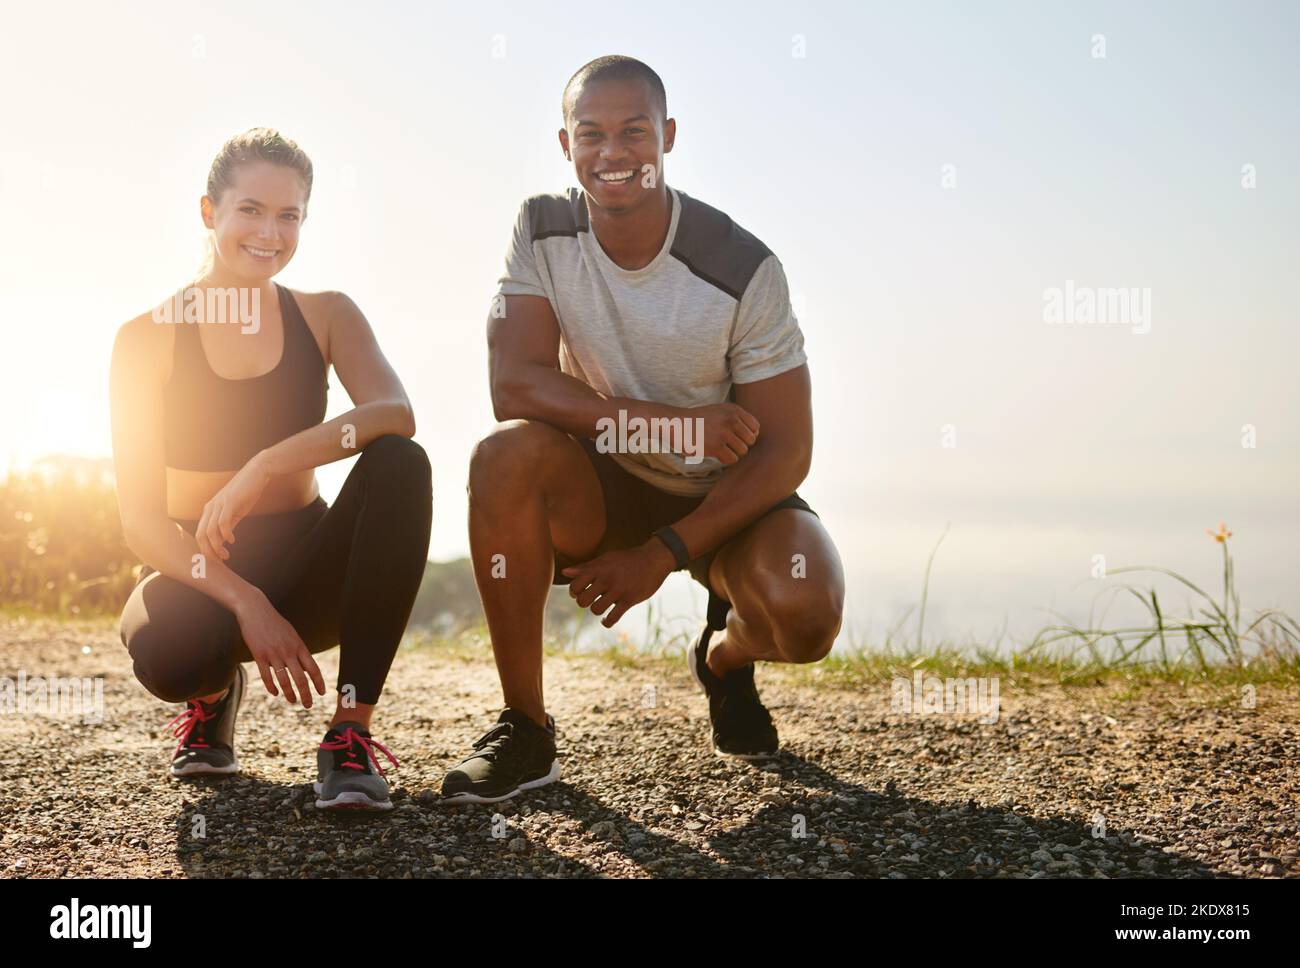 Wir machen uns gegenseitig für unsere Fitnessziele verantwortlich. Ein fittiges junges Paar, das draußen gemeinsam trainiert. Stockfoto